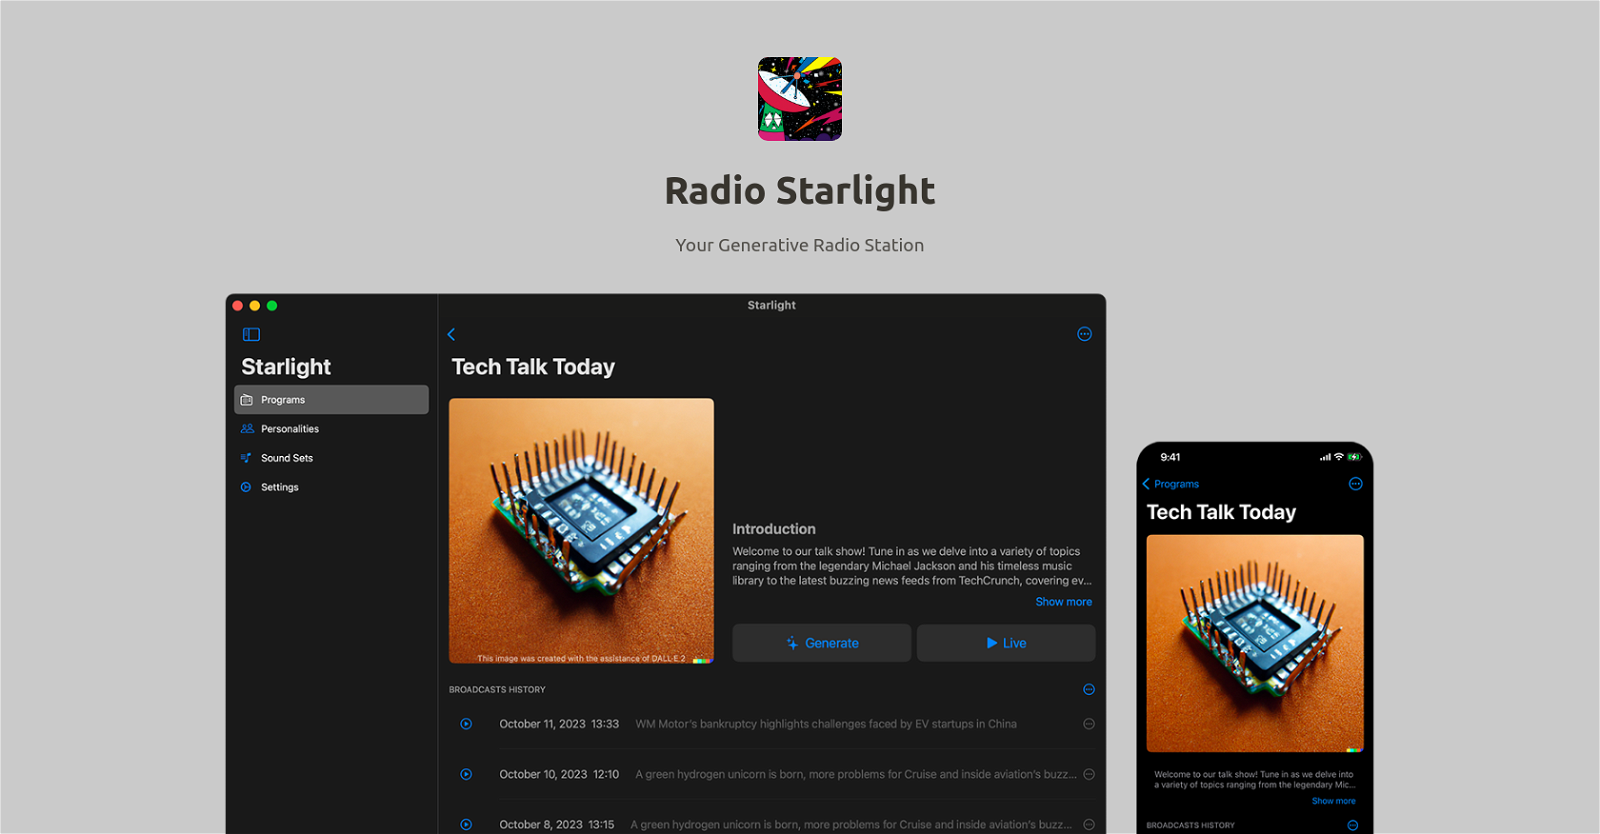 Radio Starlight image